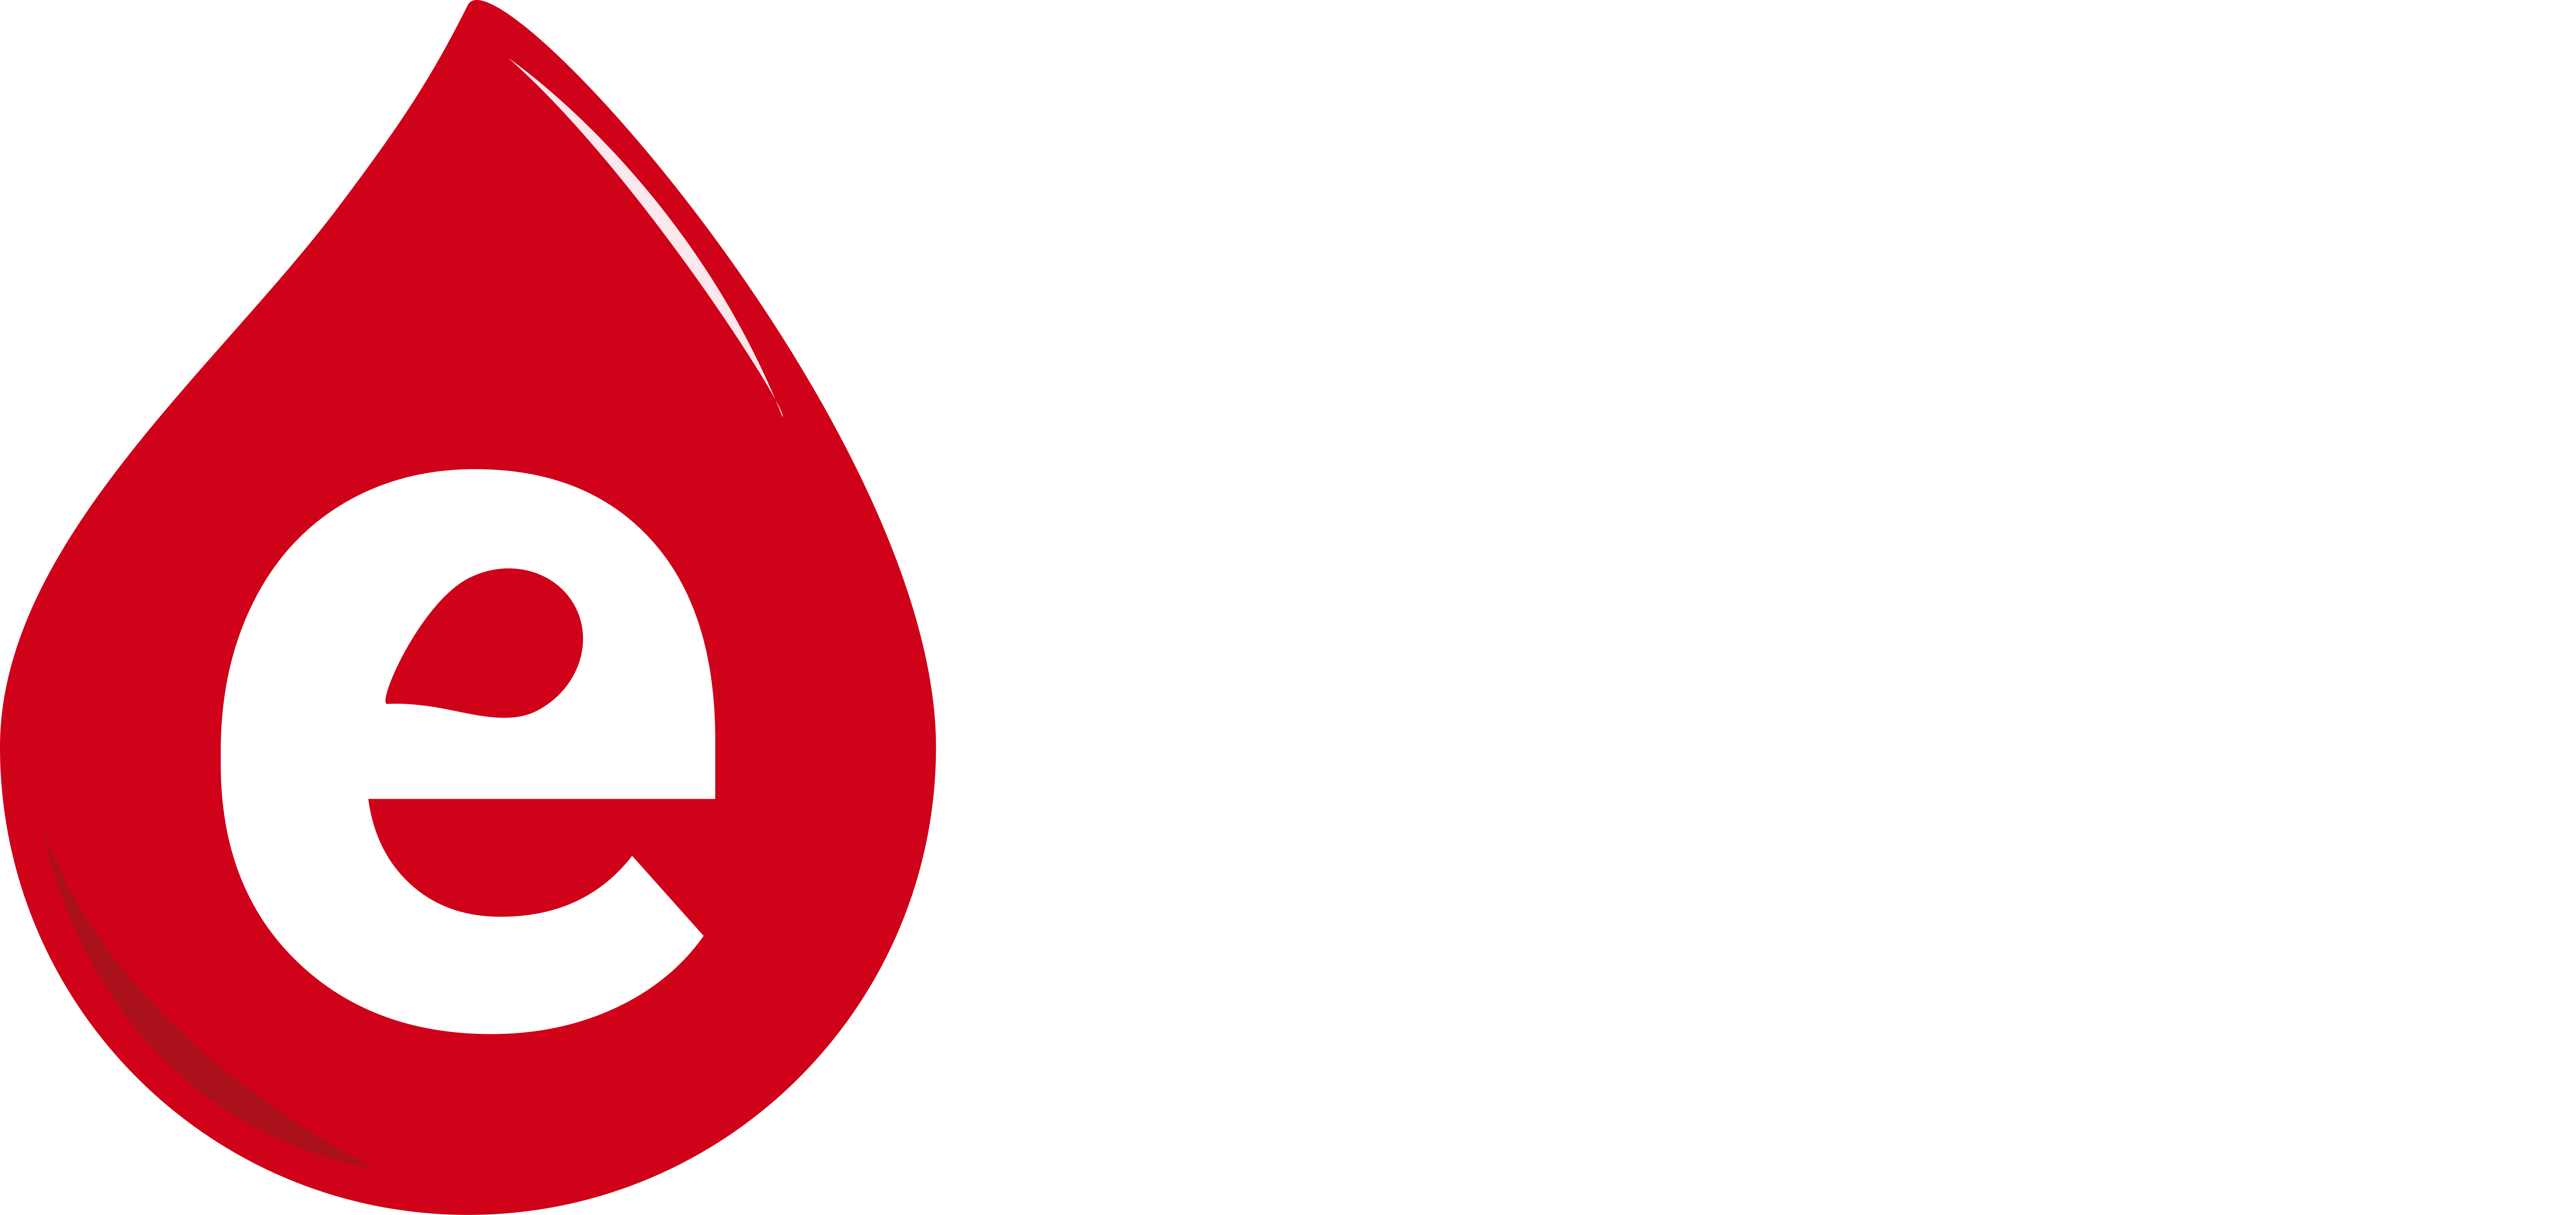 Salon łazienek Enano Bydgoszcz